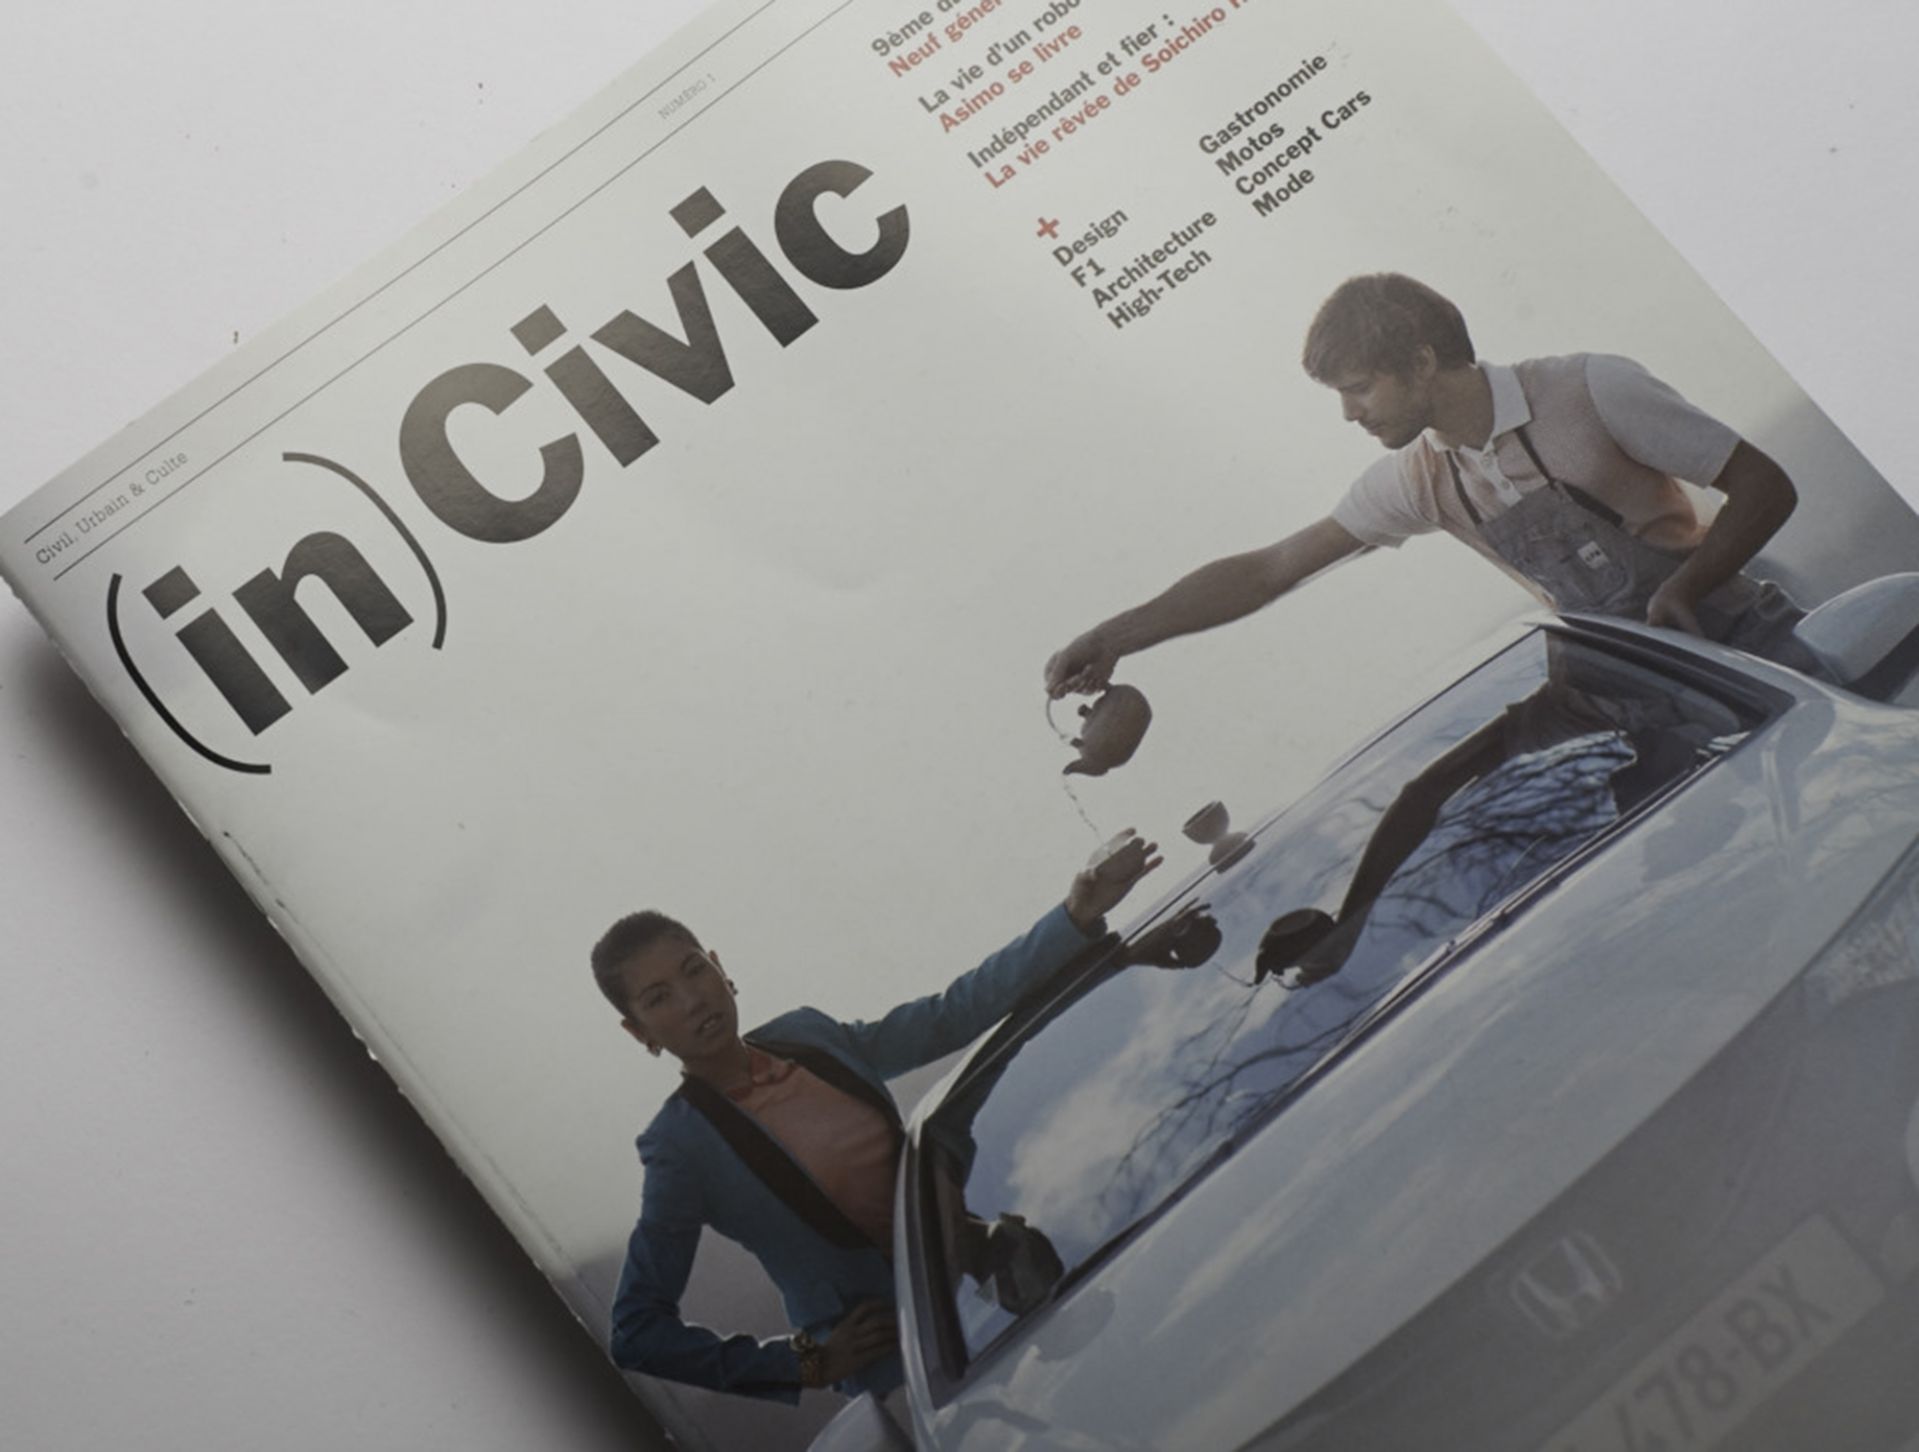 (in)Civic brand magazine